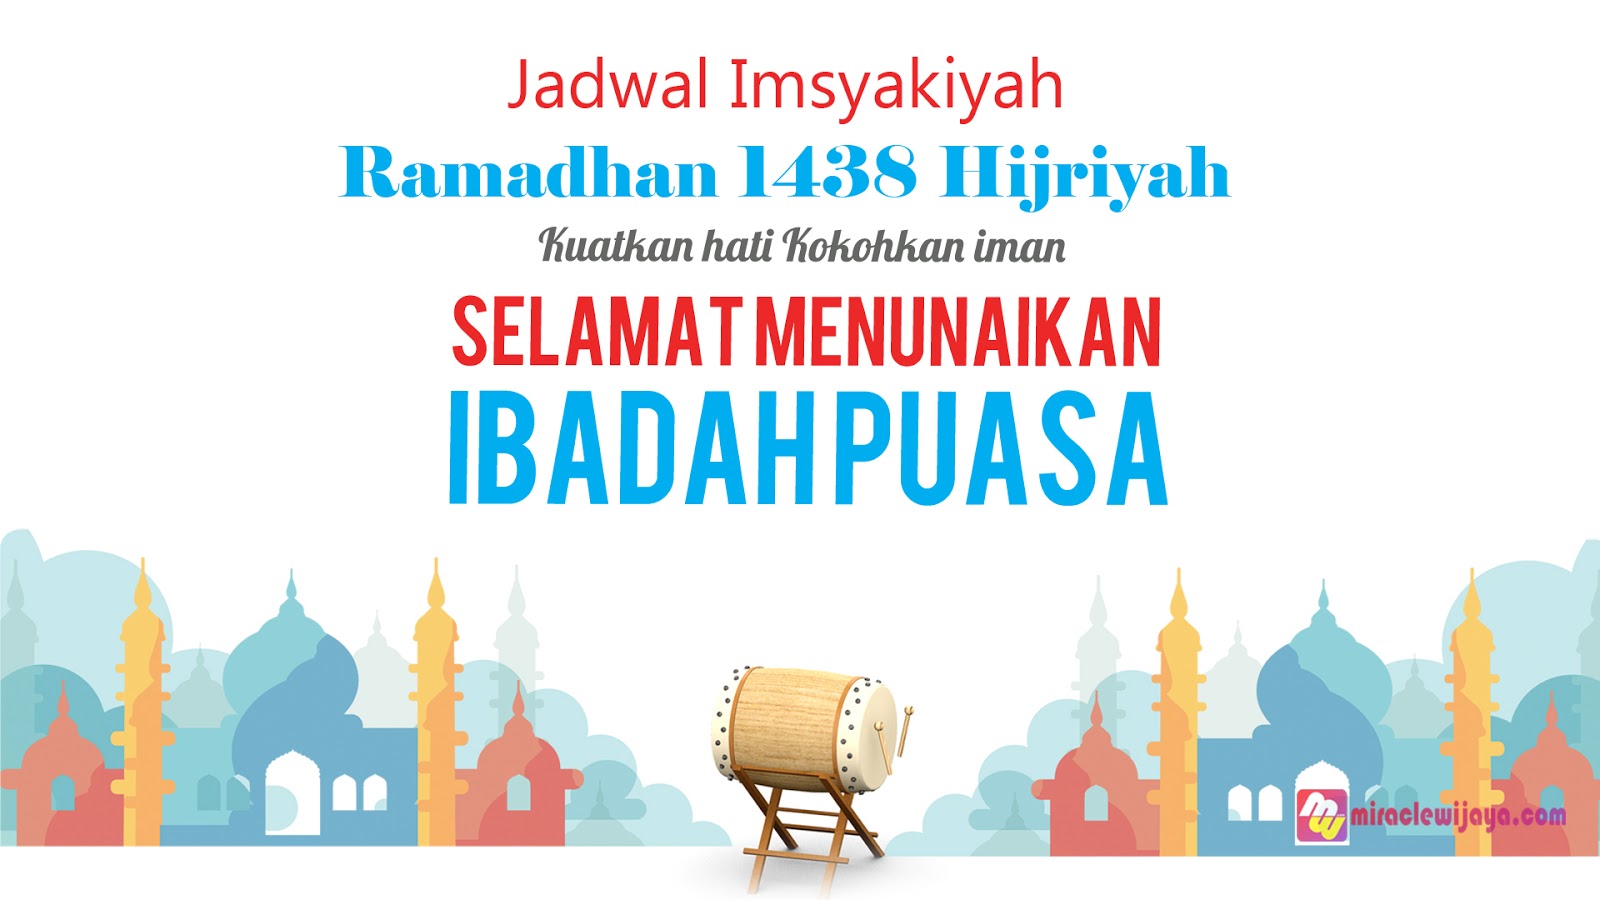 Jadwal Imsakiyah Ramadhan 2018 (1439H)